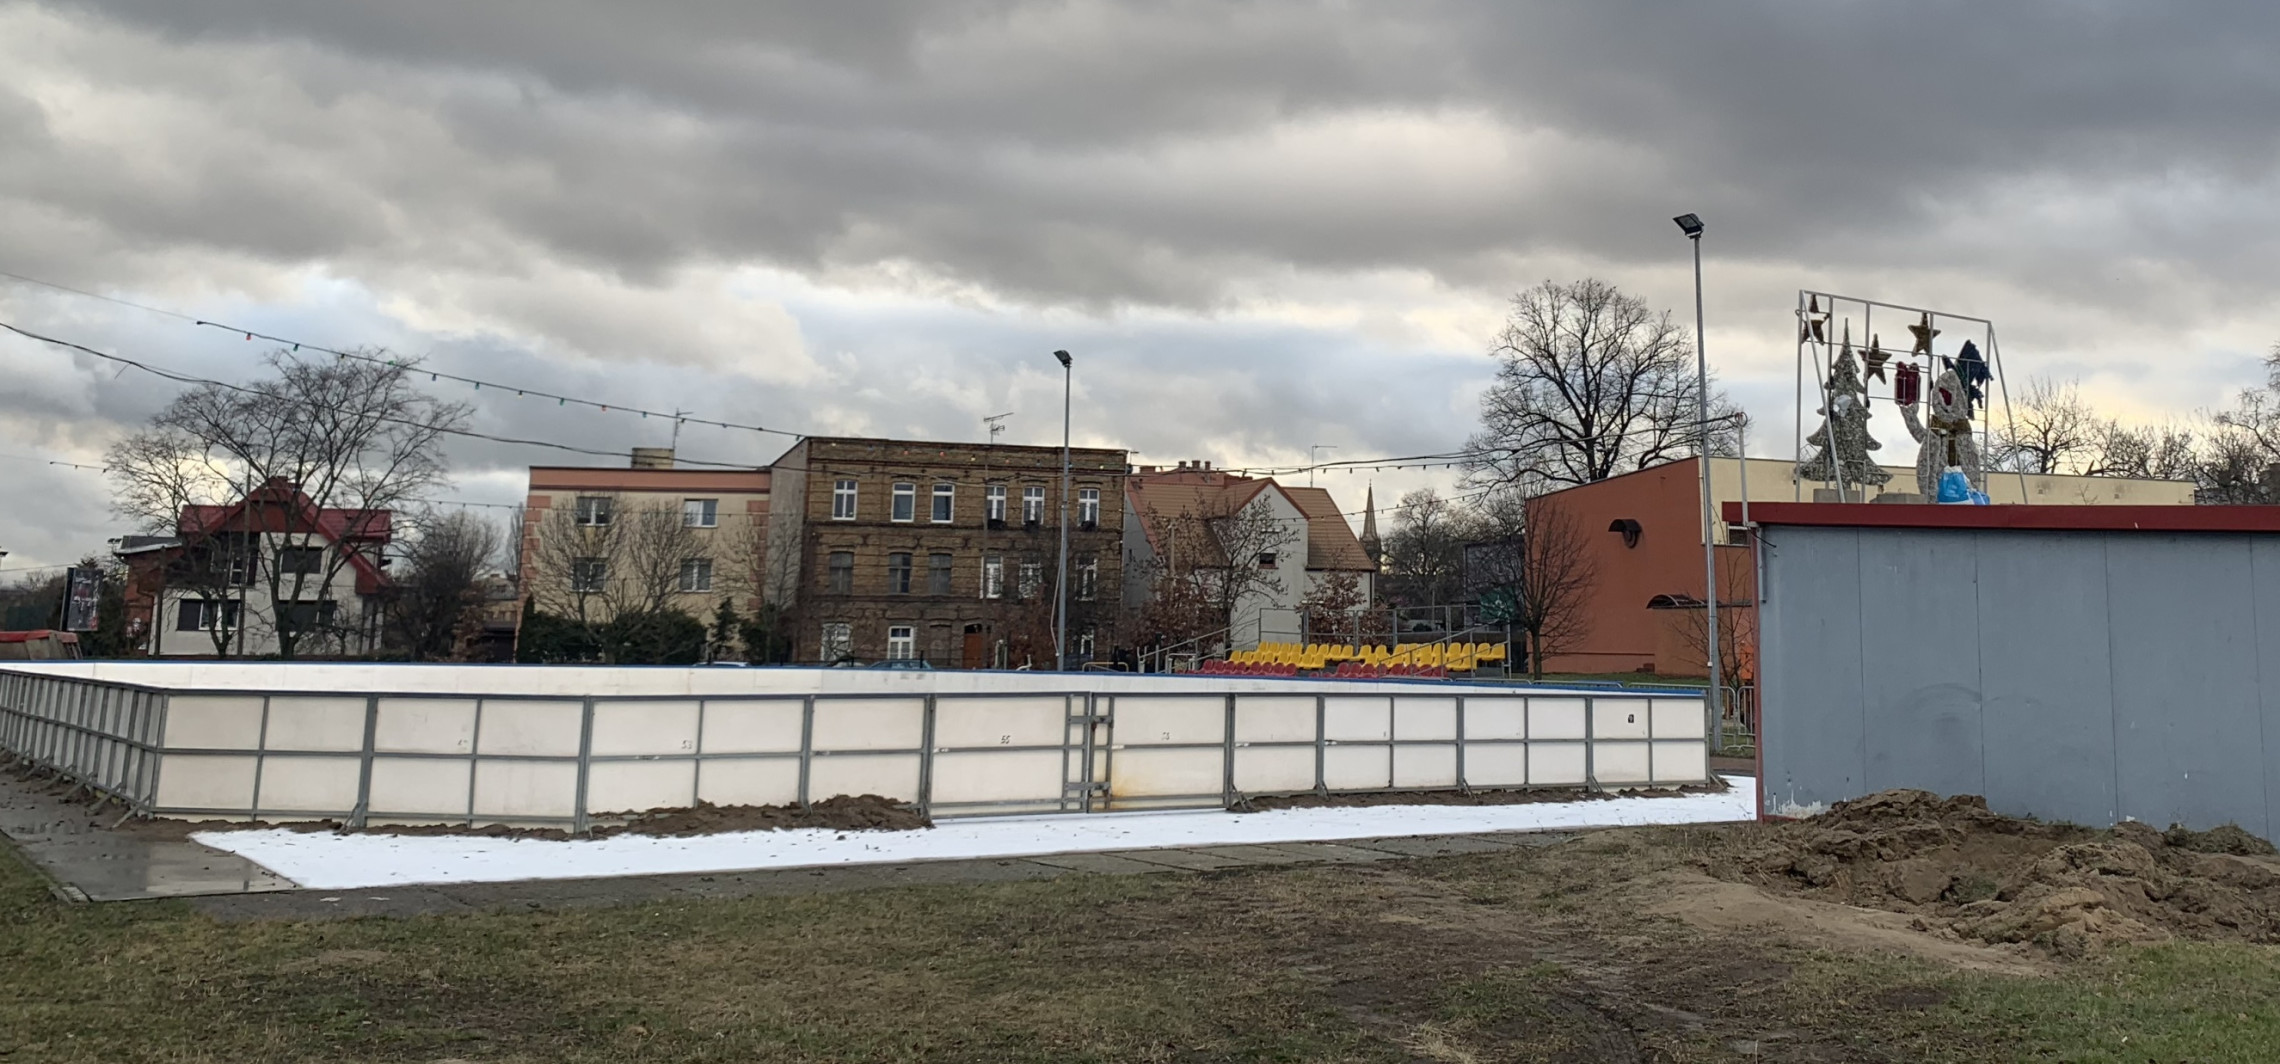 Inowrocław - Czy to ostatni sezon lodowiska? Pytamy o szczegóły